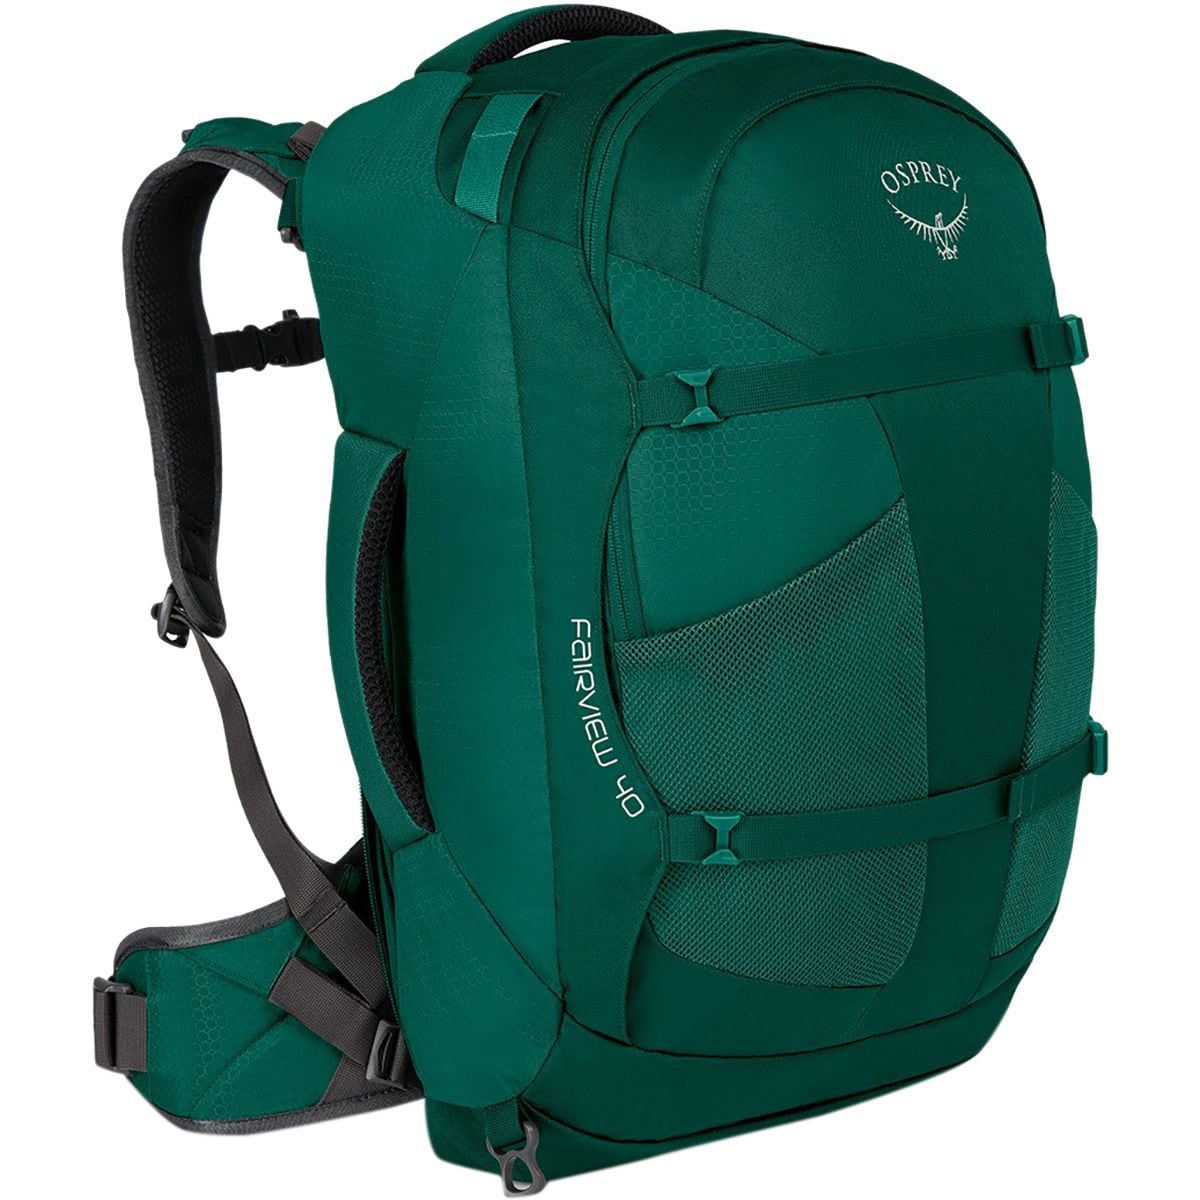 Osprey Packs Fairview 40L Backpack - Women's